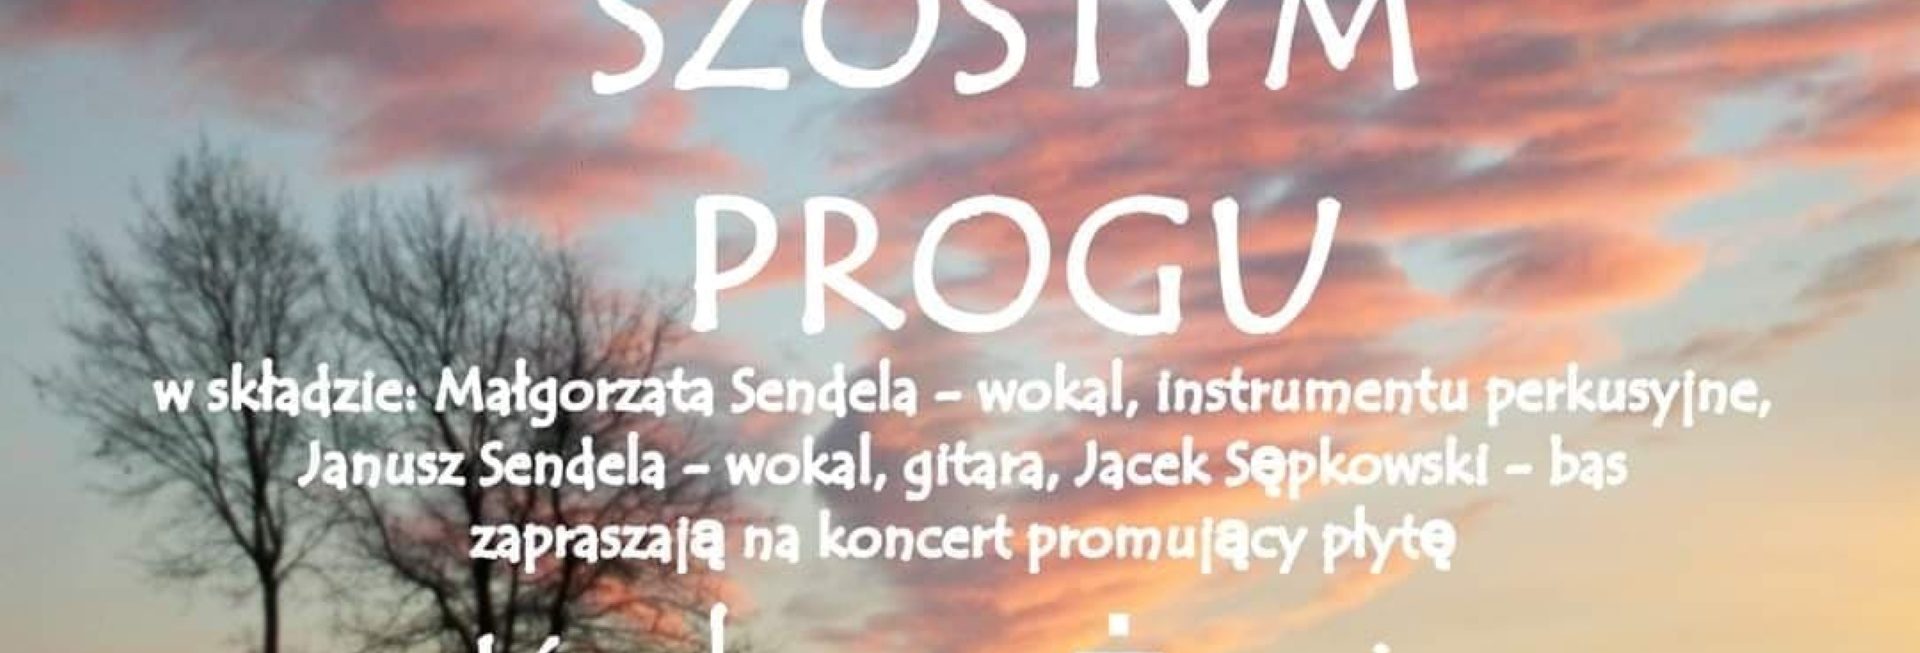 Plakat graficzny zapraszający do Gietrzwałdu na koncert zespołu NA SZÓSTYM PROGU Gietrzwałd 2022.